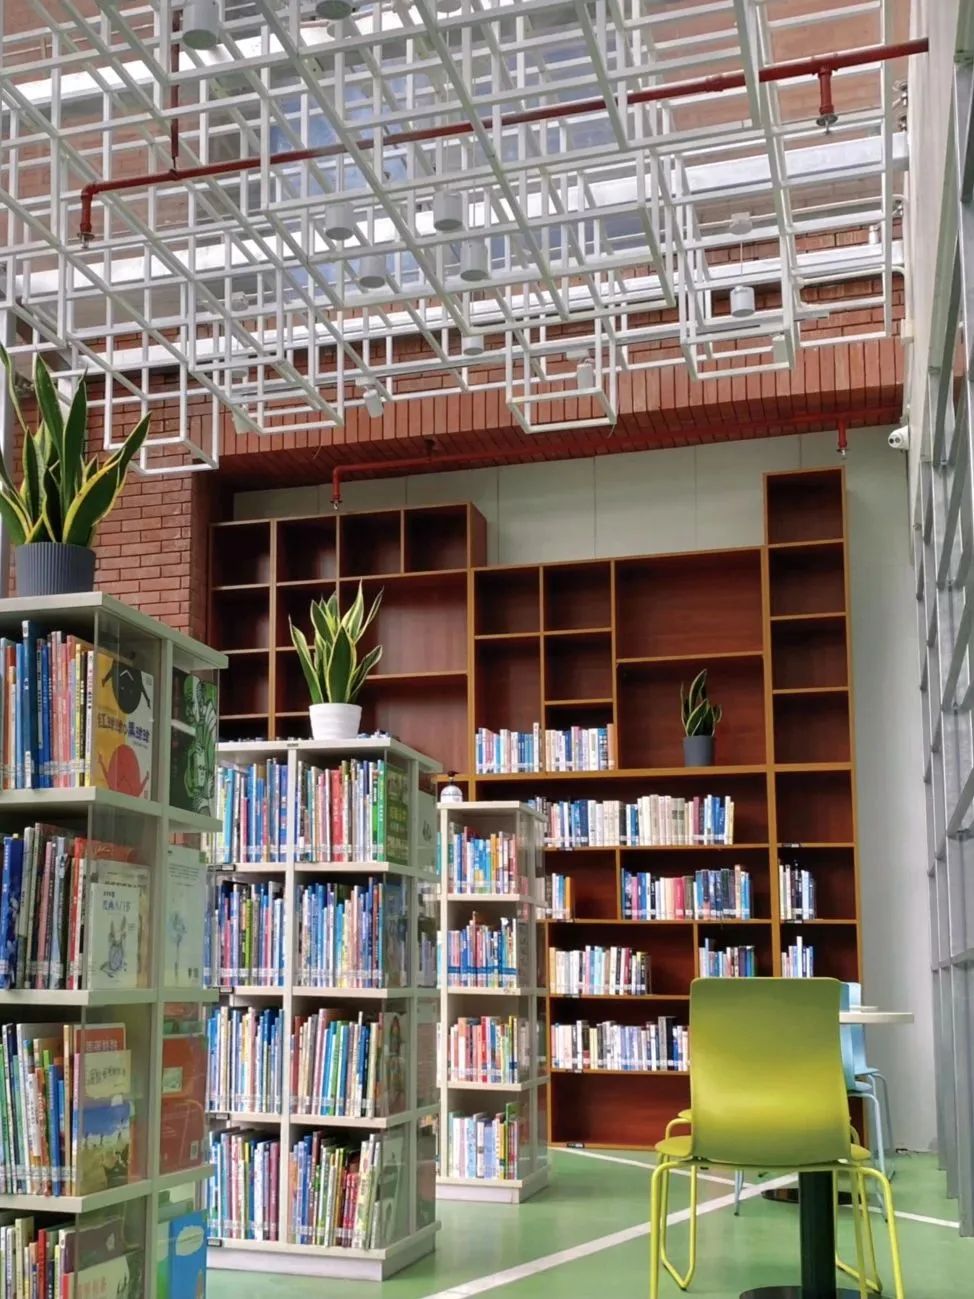 就在明天！福田区图书馆24小时自助图书馆恢复开放！